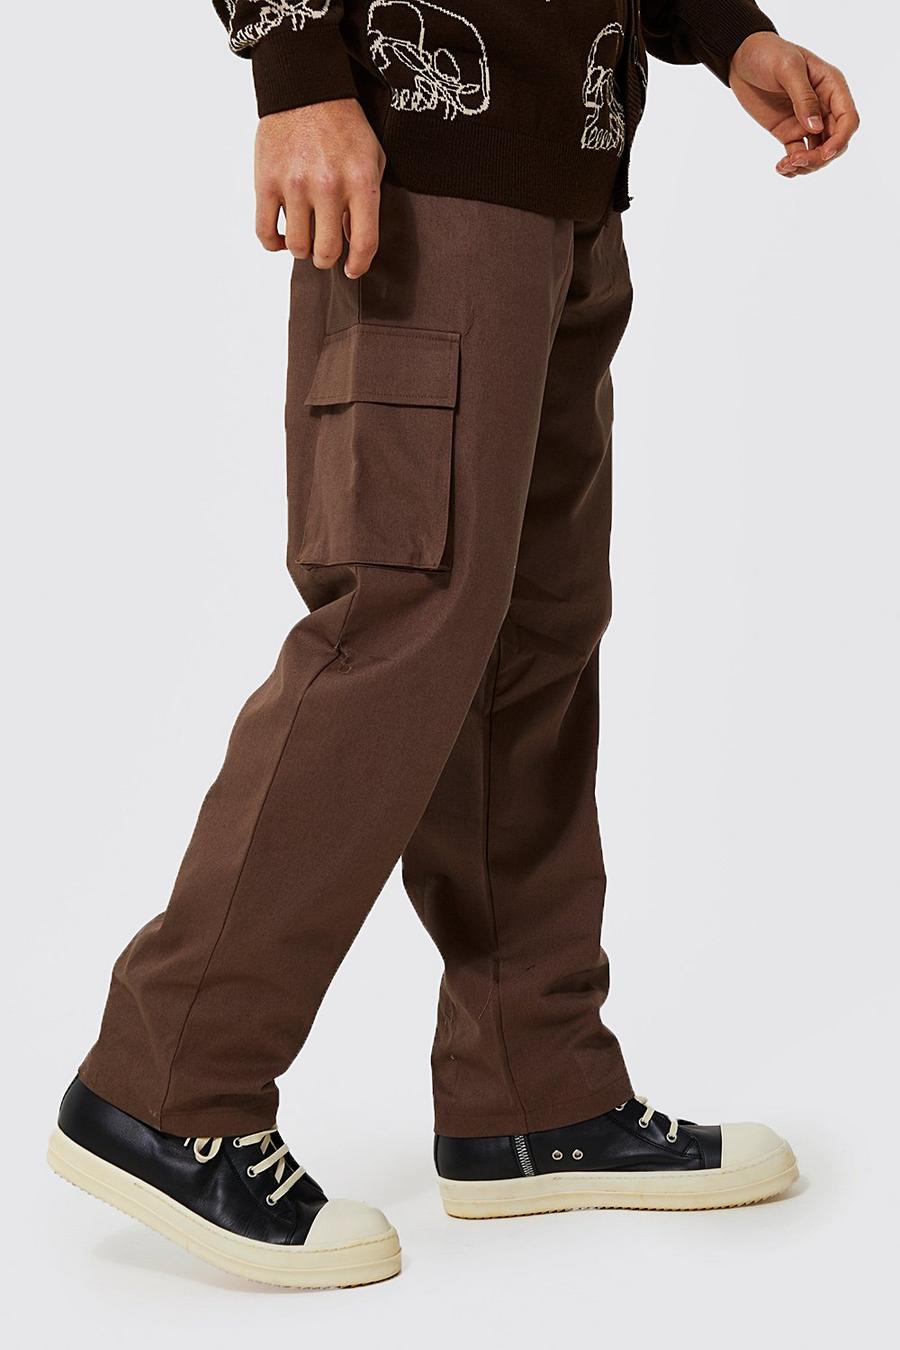 שוקולד marrón מכנסי צ'ינו בגזרה משוחררת בסגנון דגמ'ח 